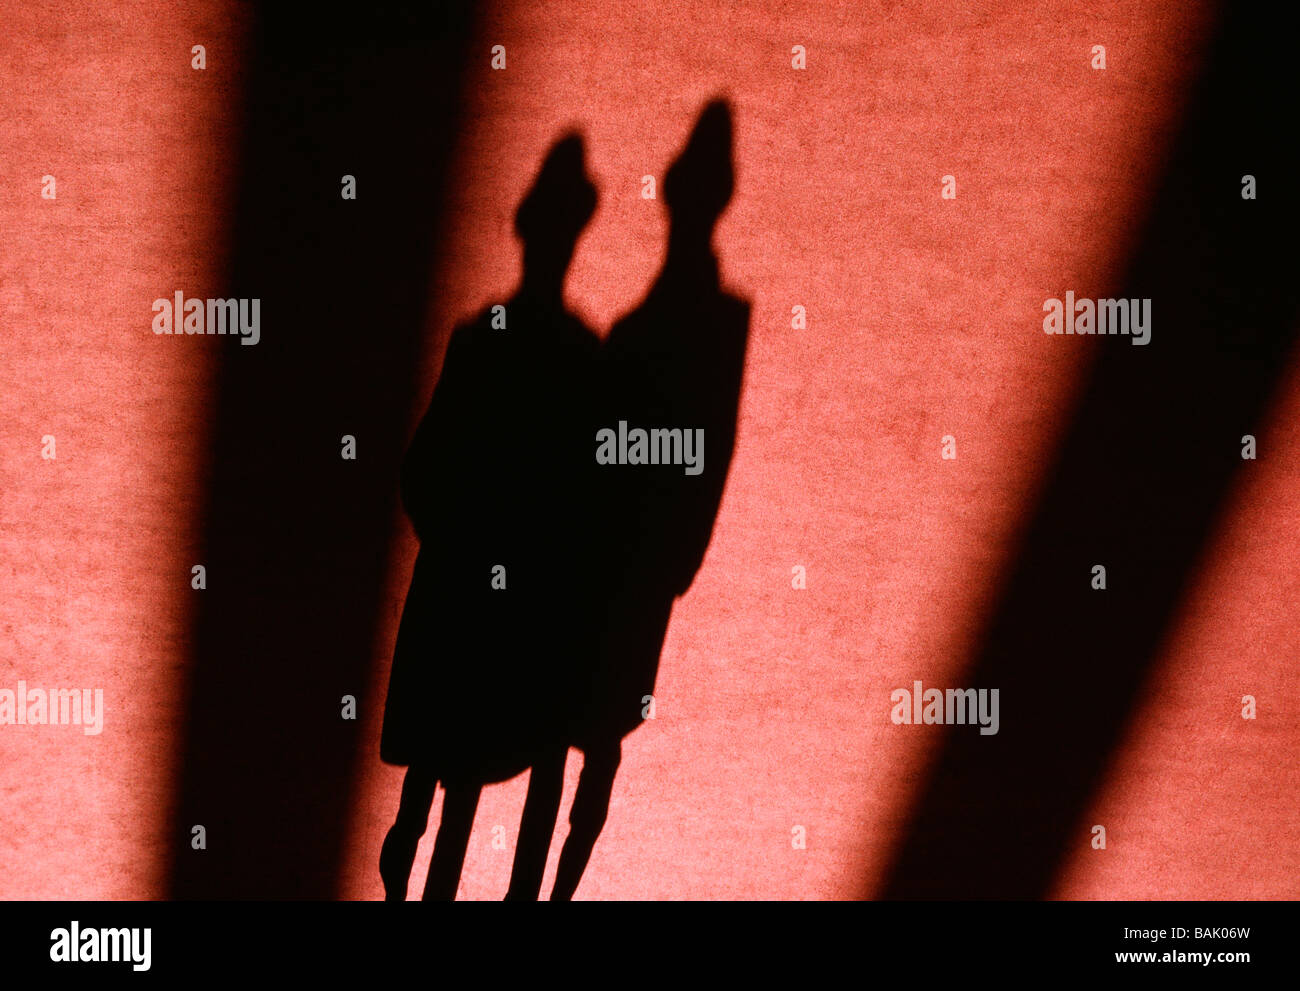 Abstrakte Sicht von einem Paar s Schatten auf einem roten Teppich Stockfoto